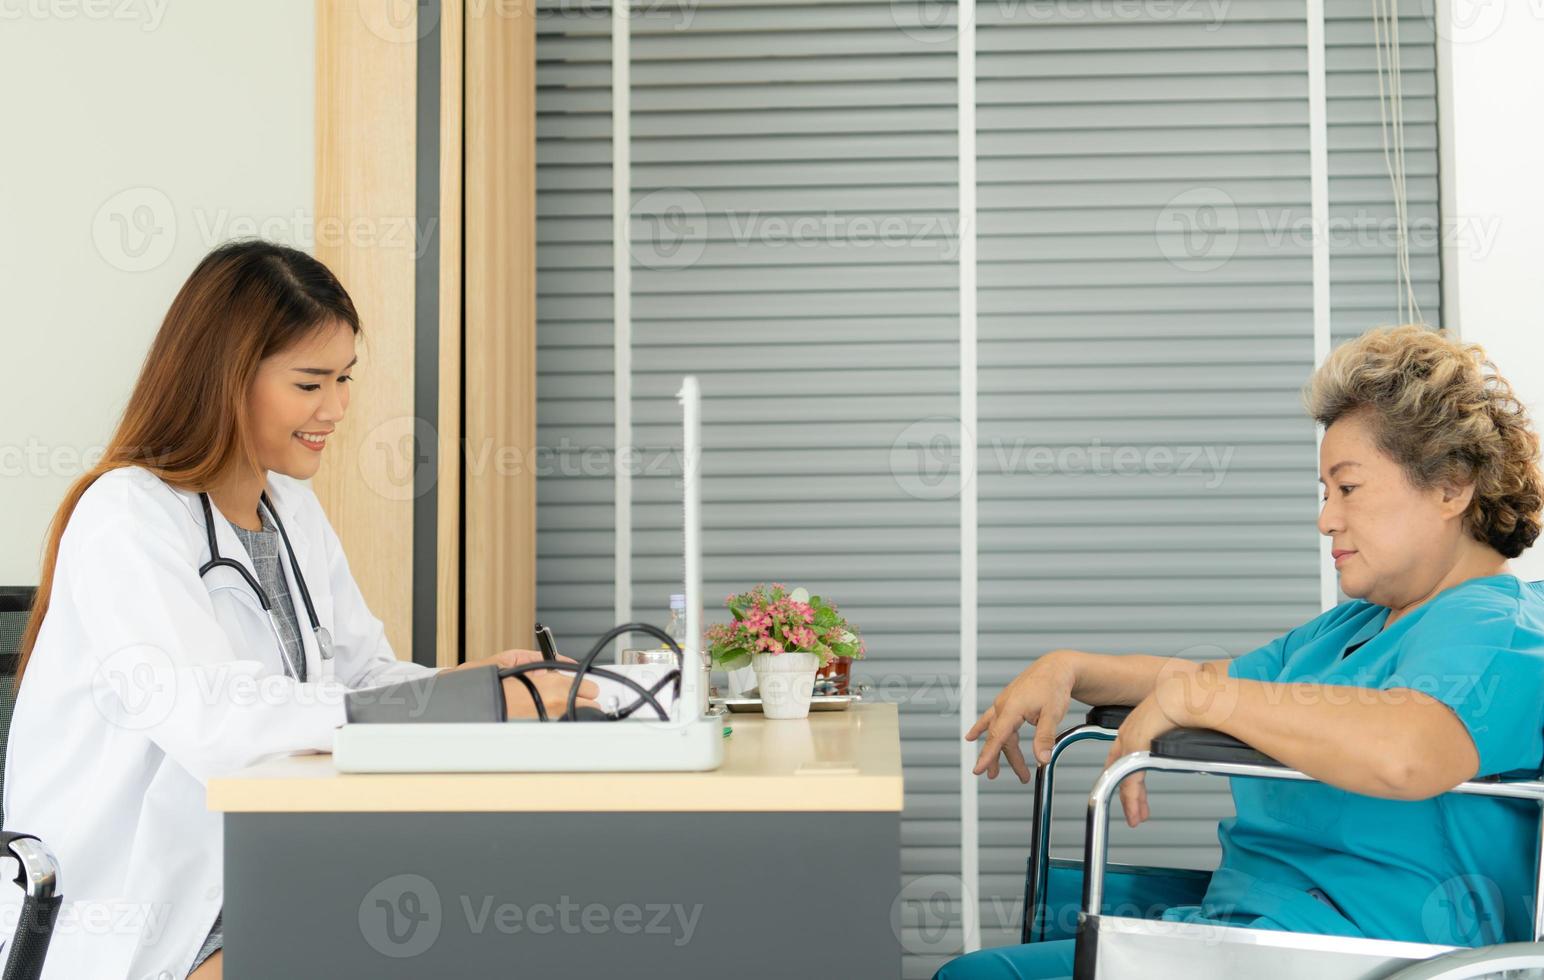 vrouwelijke artsen voeren ziektetests uit en geven medisch advies aan oudere patiënten die worden behandeld. foto